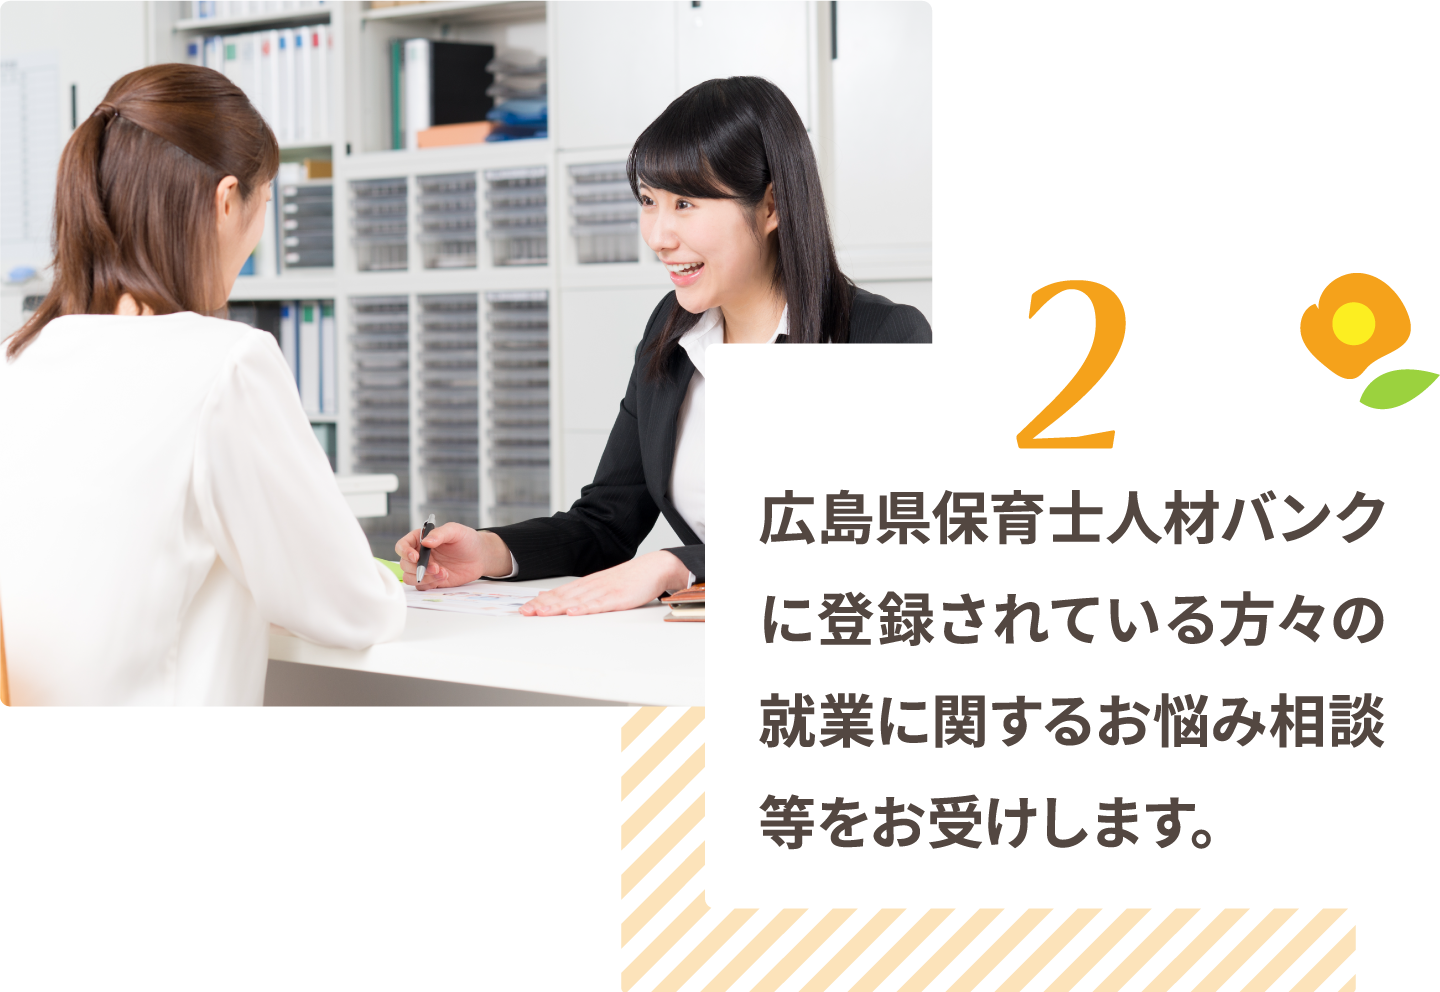 広島県保育士人材バンクに登録されている方々の就業に関するお悩み相談等をお受けします。